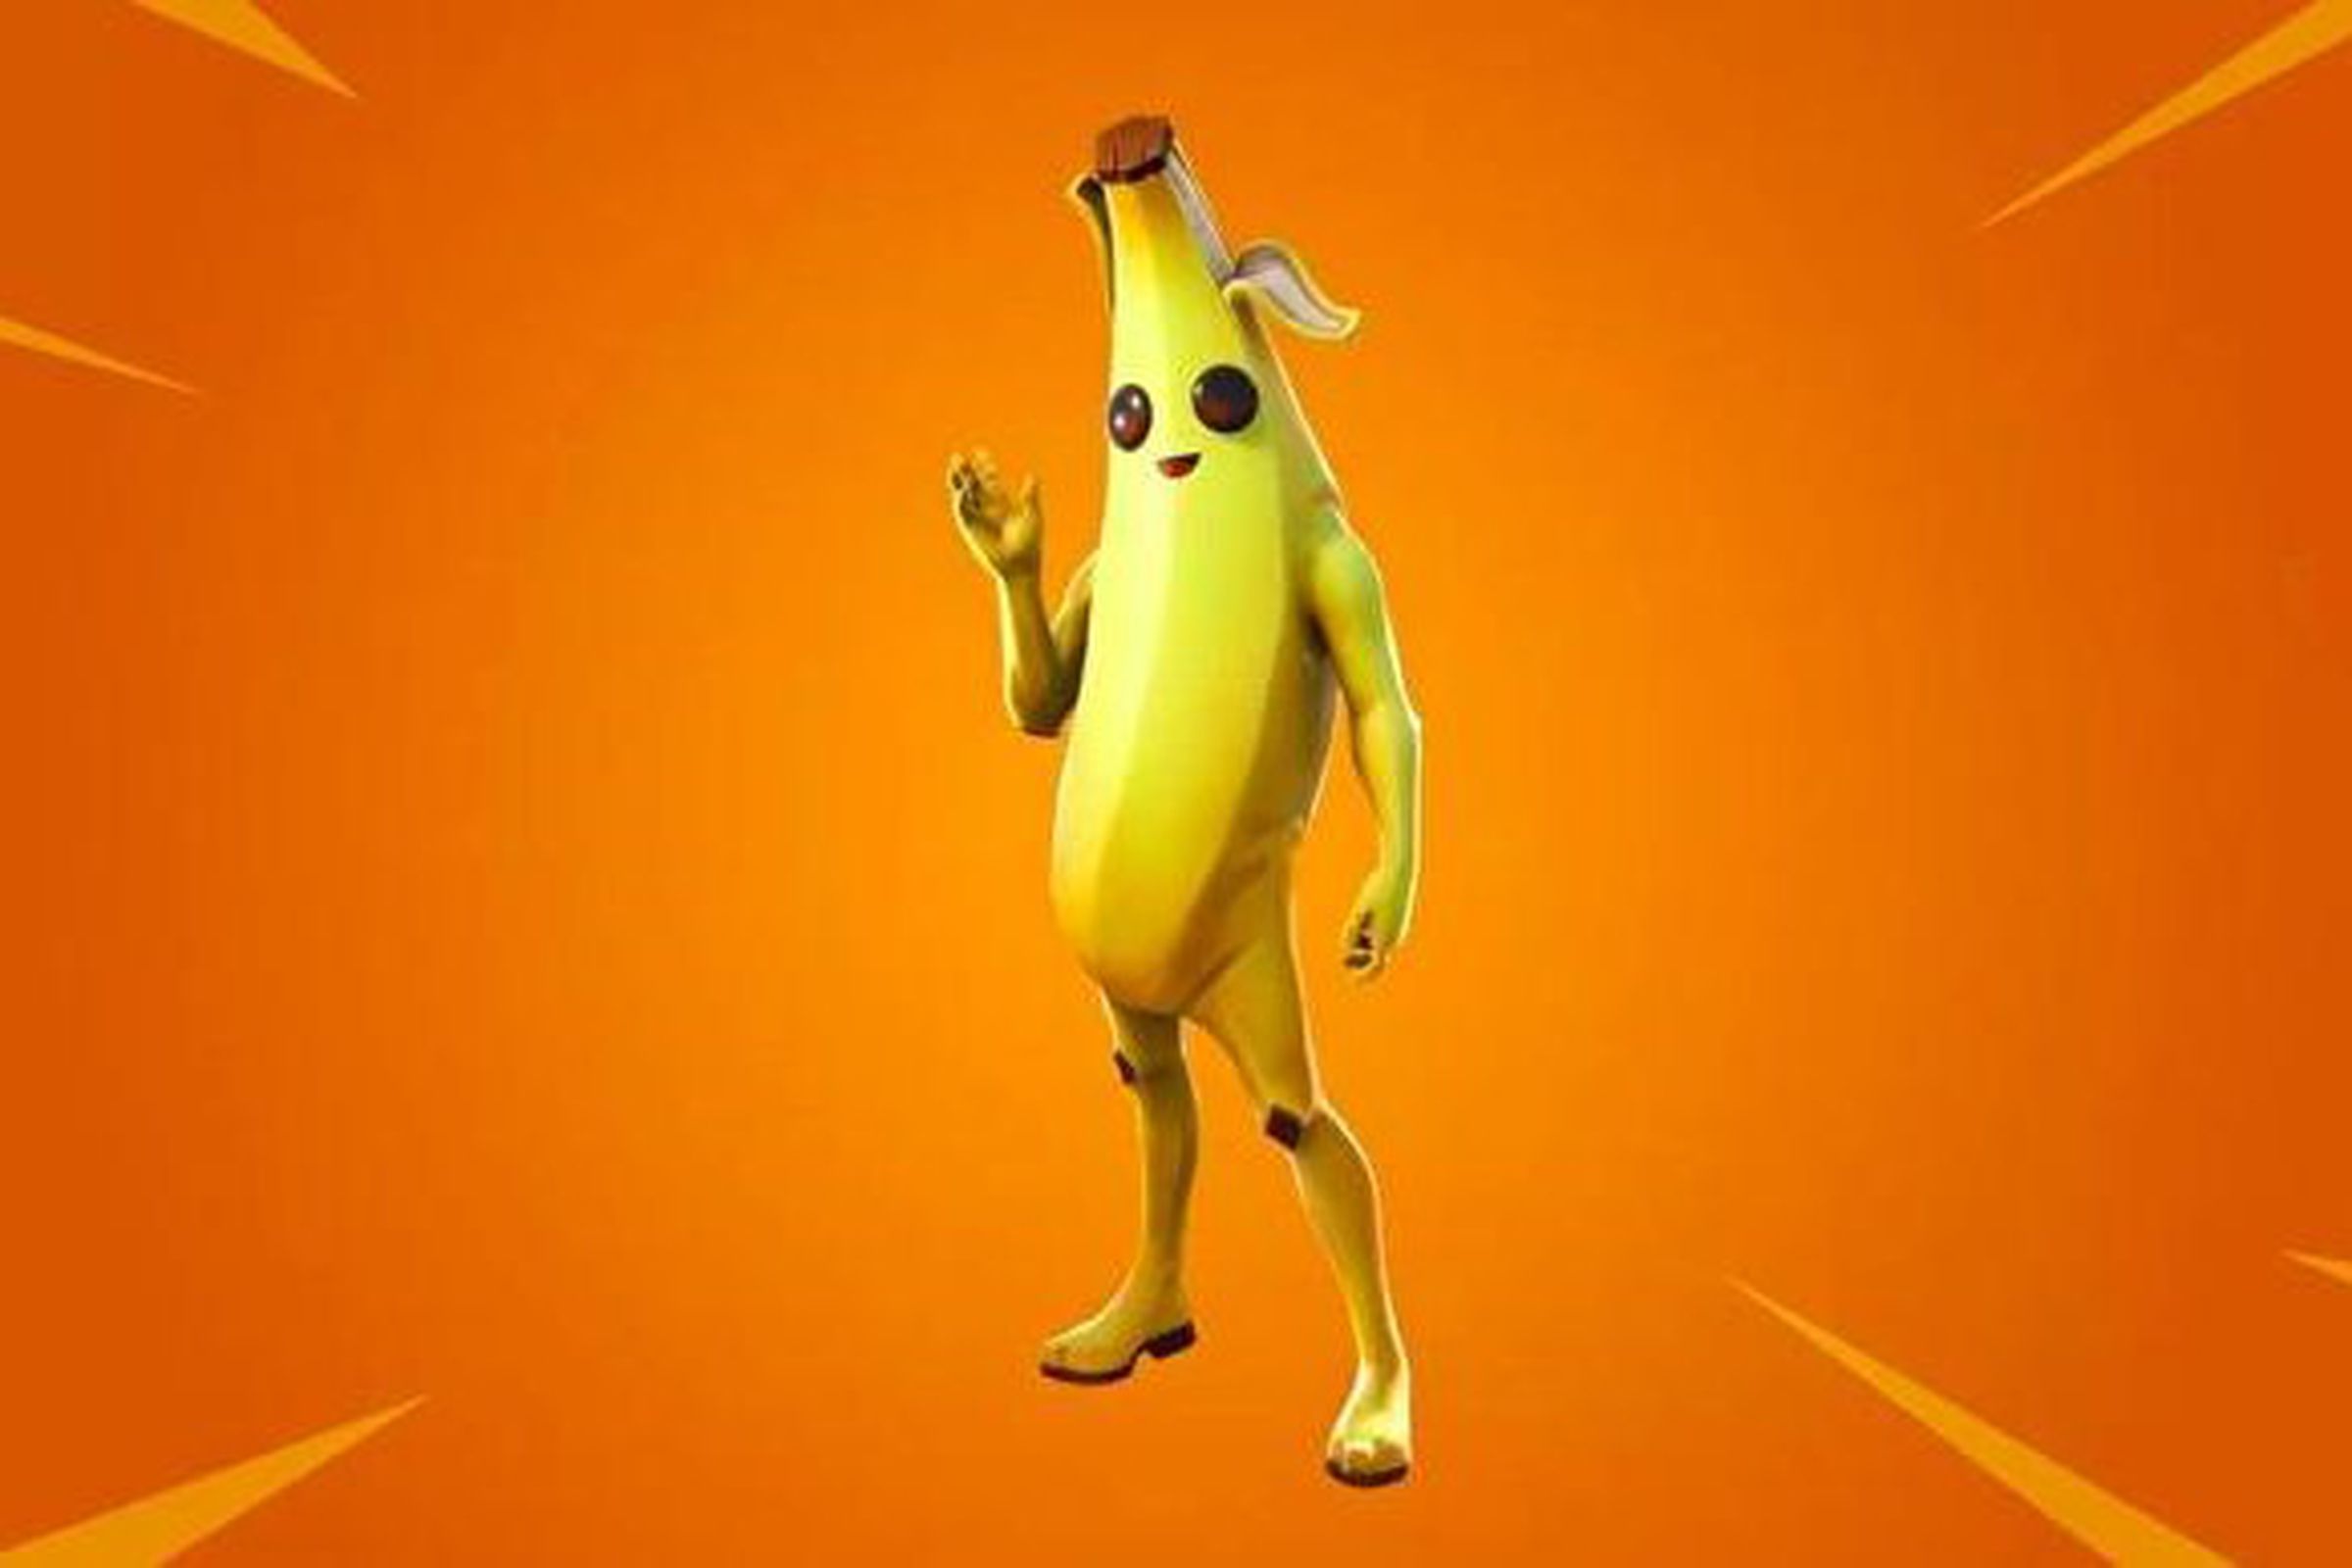 Peely the banana.